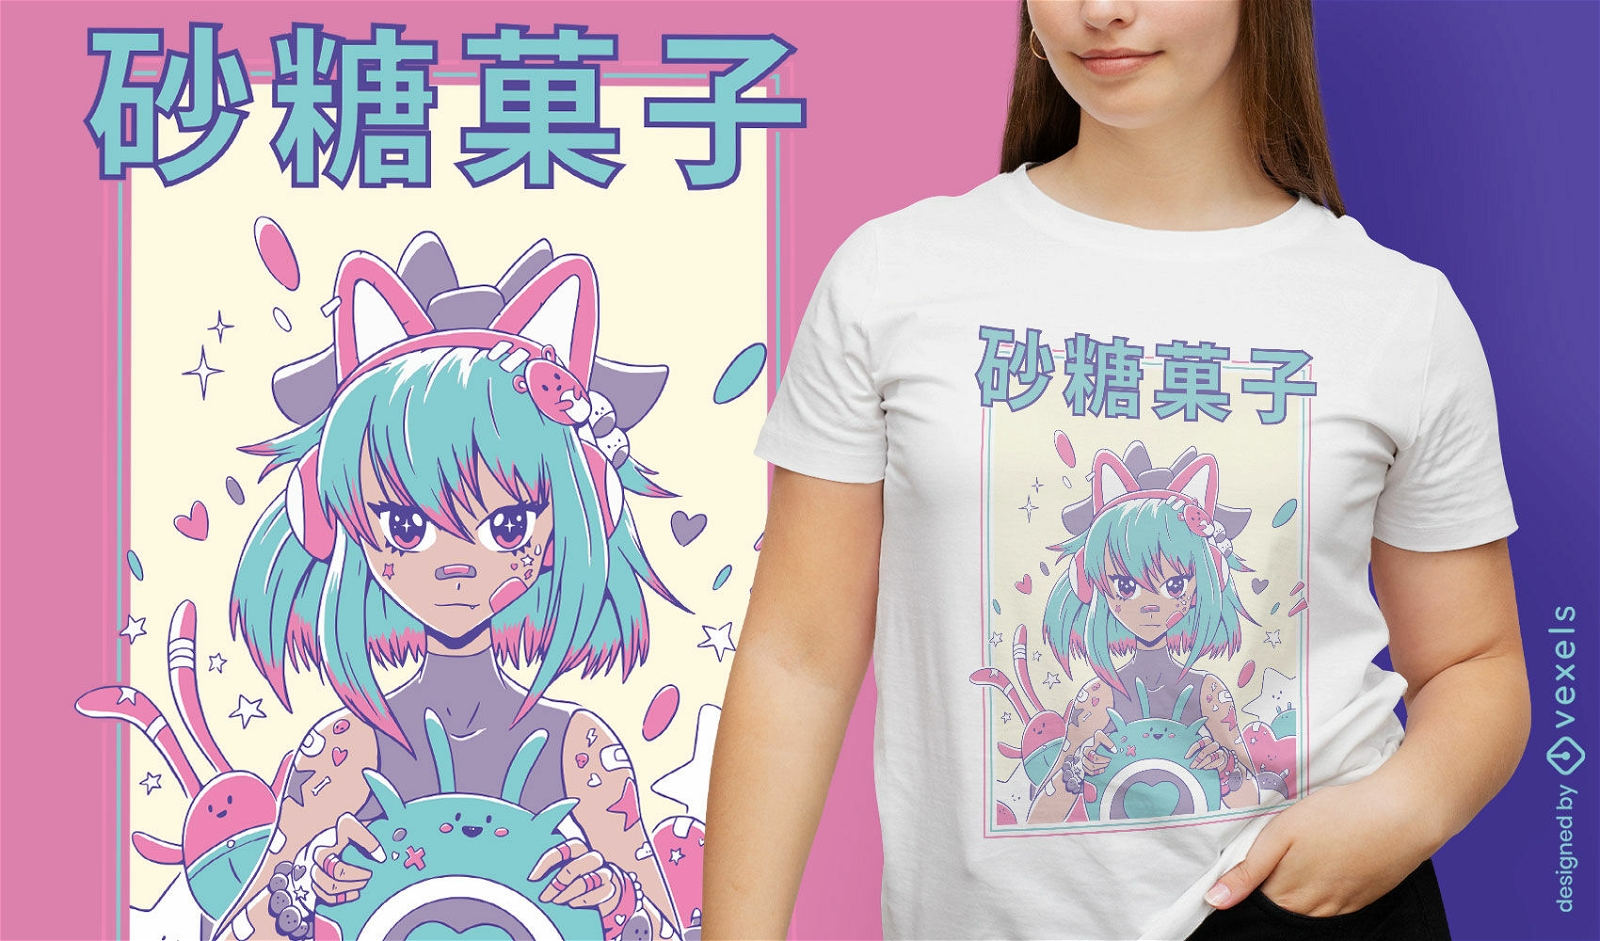 Sad Anime Girl Shirt lonely aesthetic girl samishii clothing – Moshi Moshi  Shirts